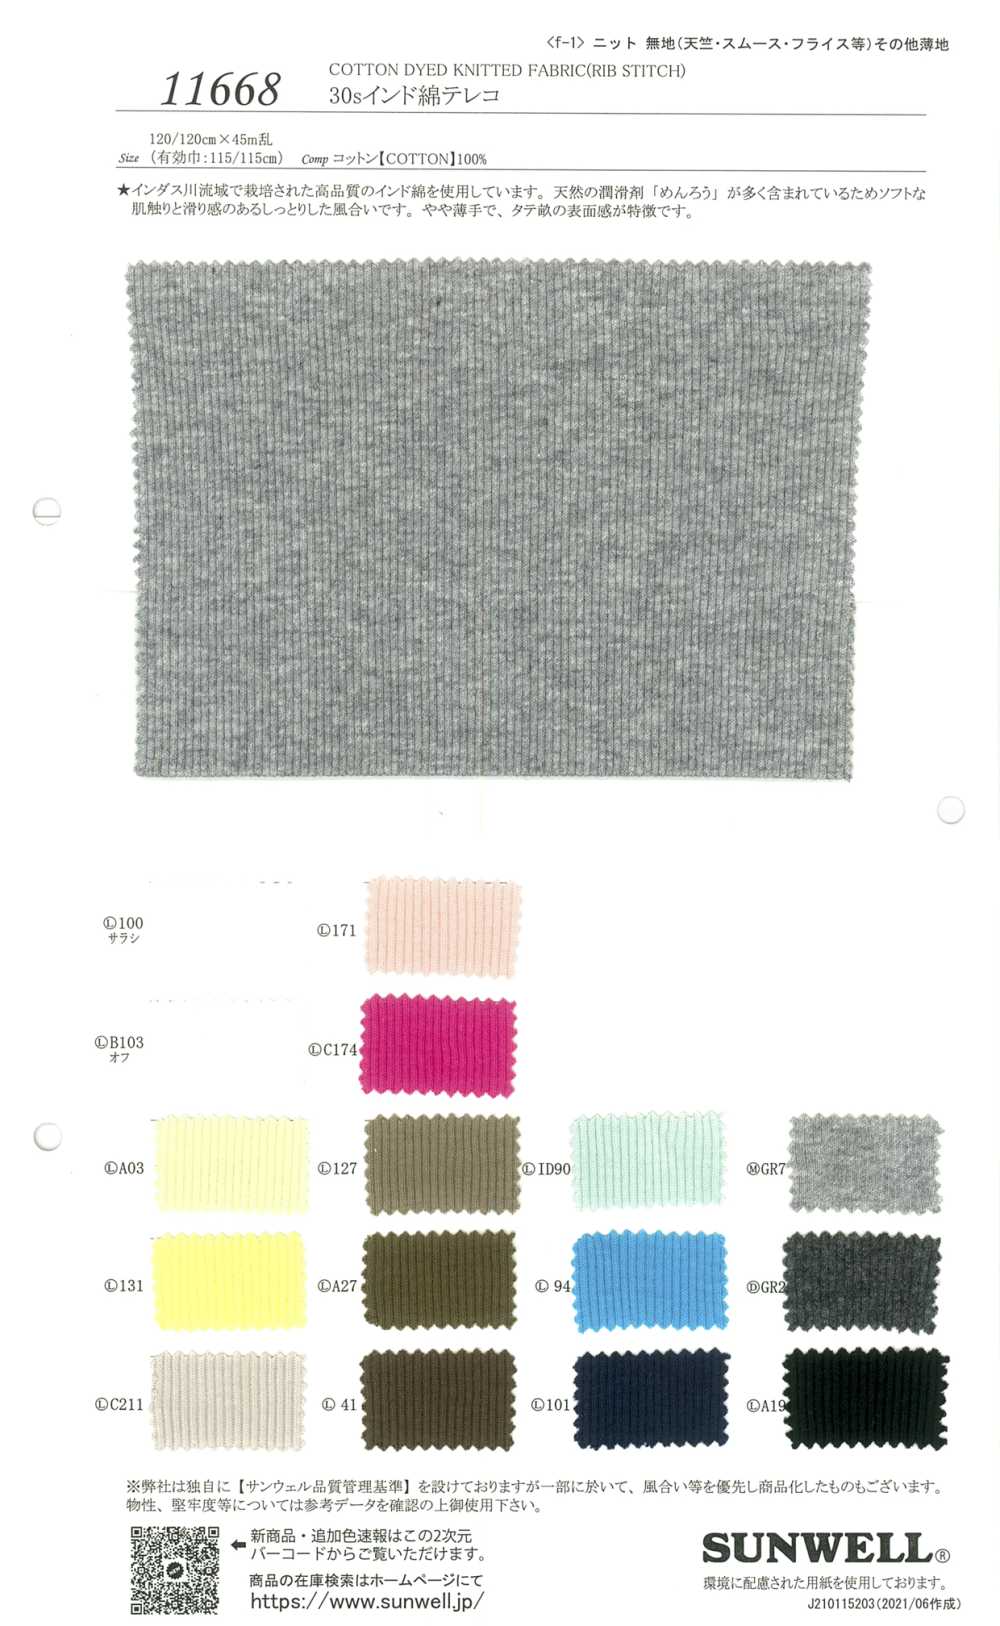 11668 30 Fils En Coton Indien Tereko[Fabrication De Textile] SUNWELL